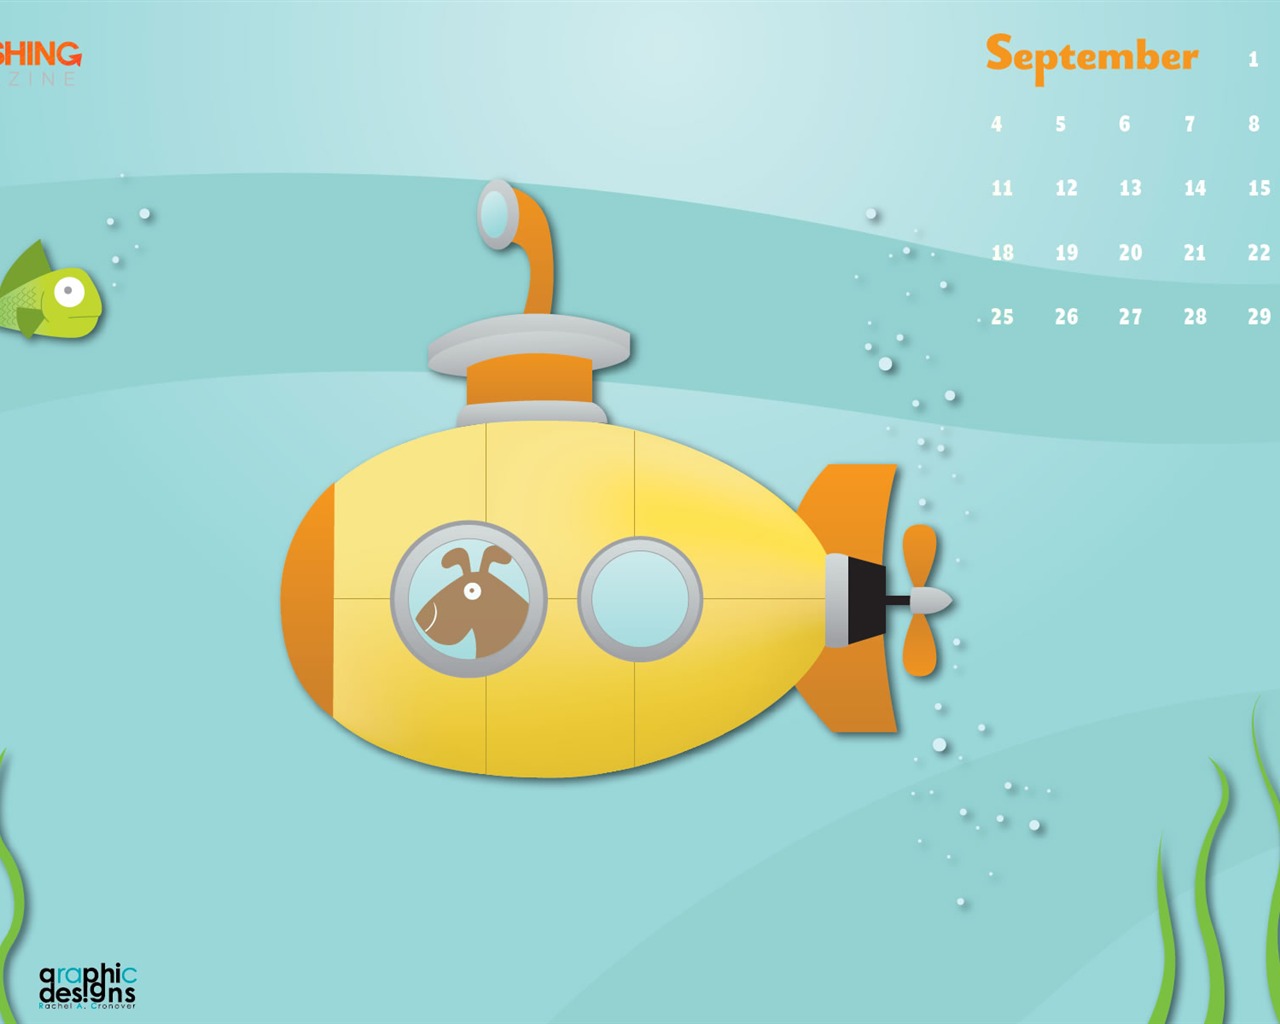 September 2011 Kalender Wallpaper (2) #15 - 1280x1024